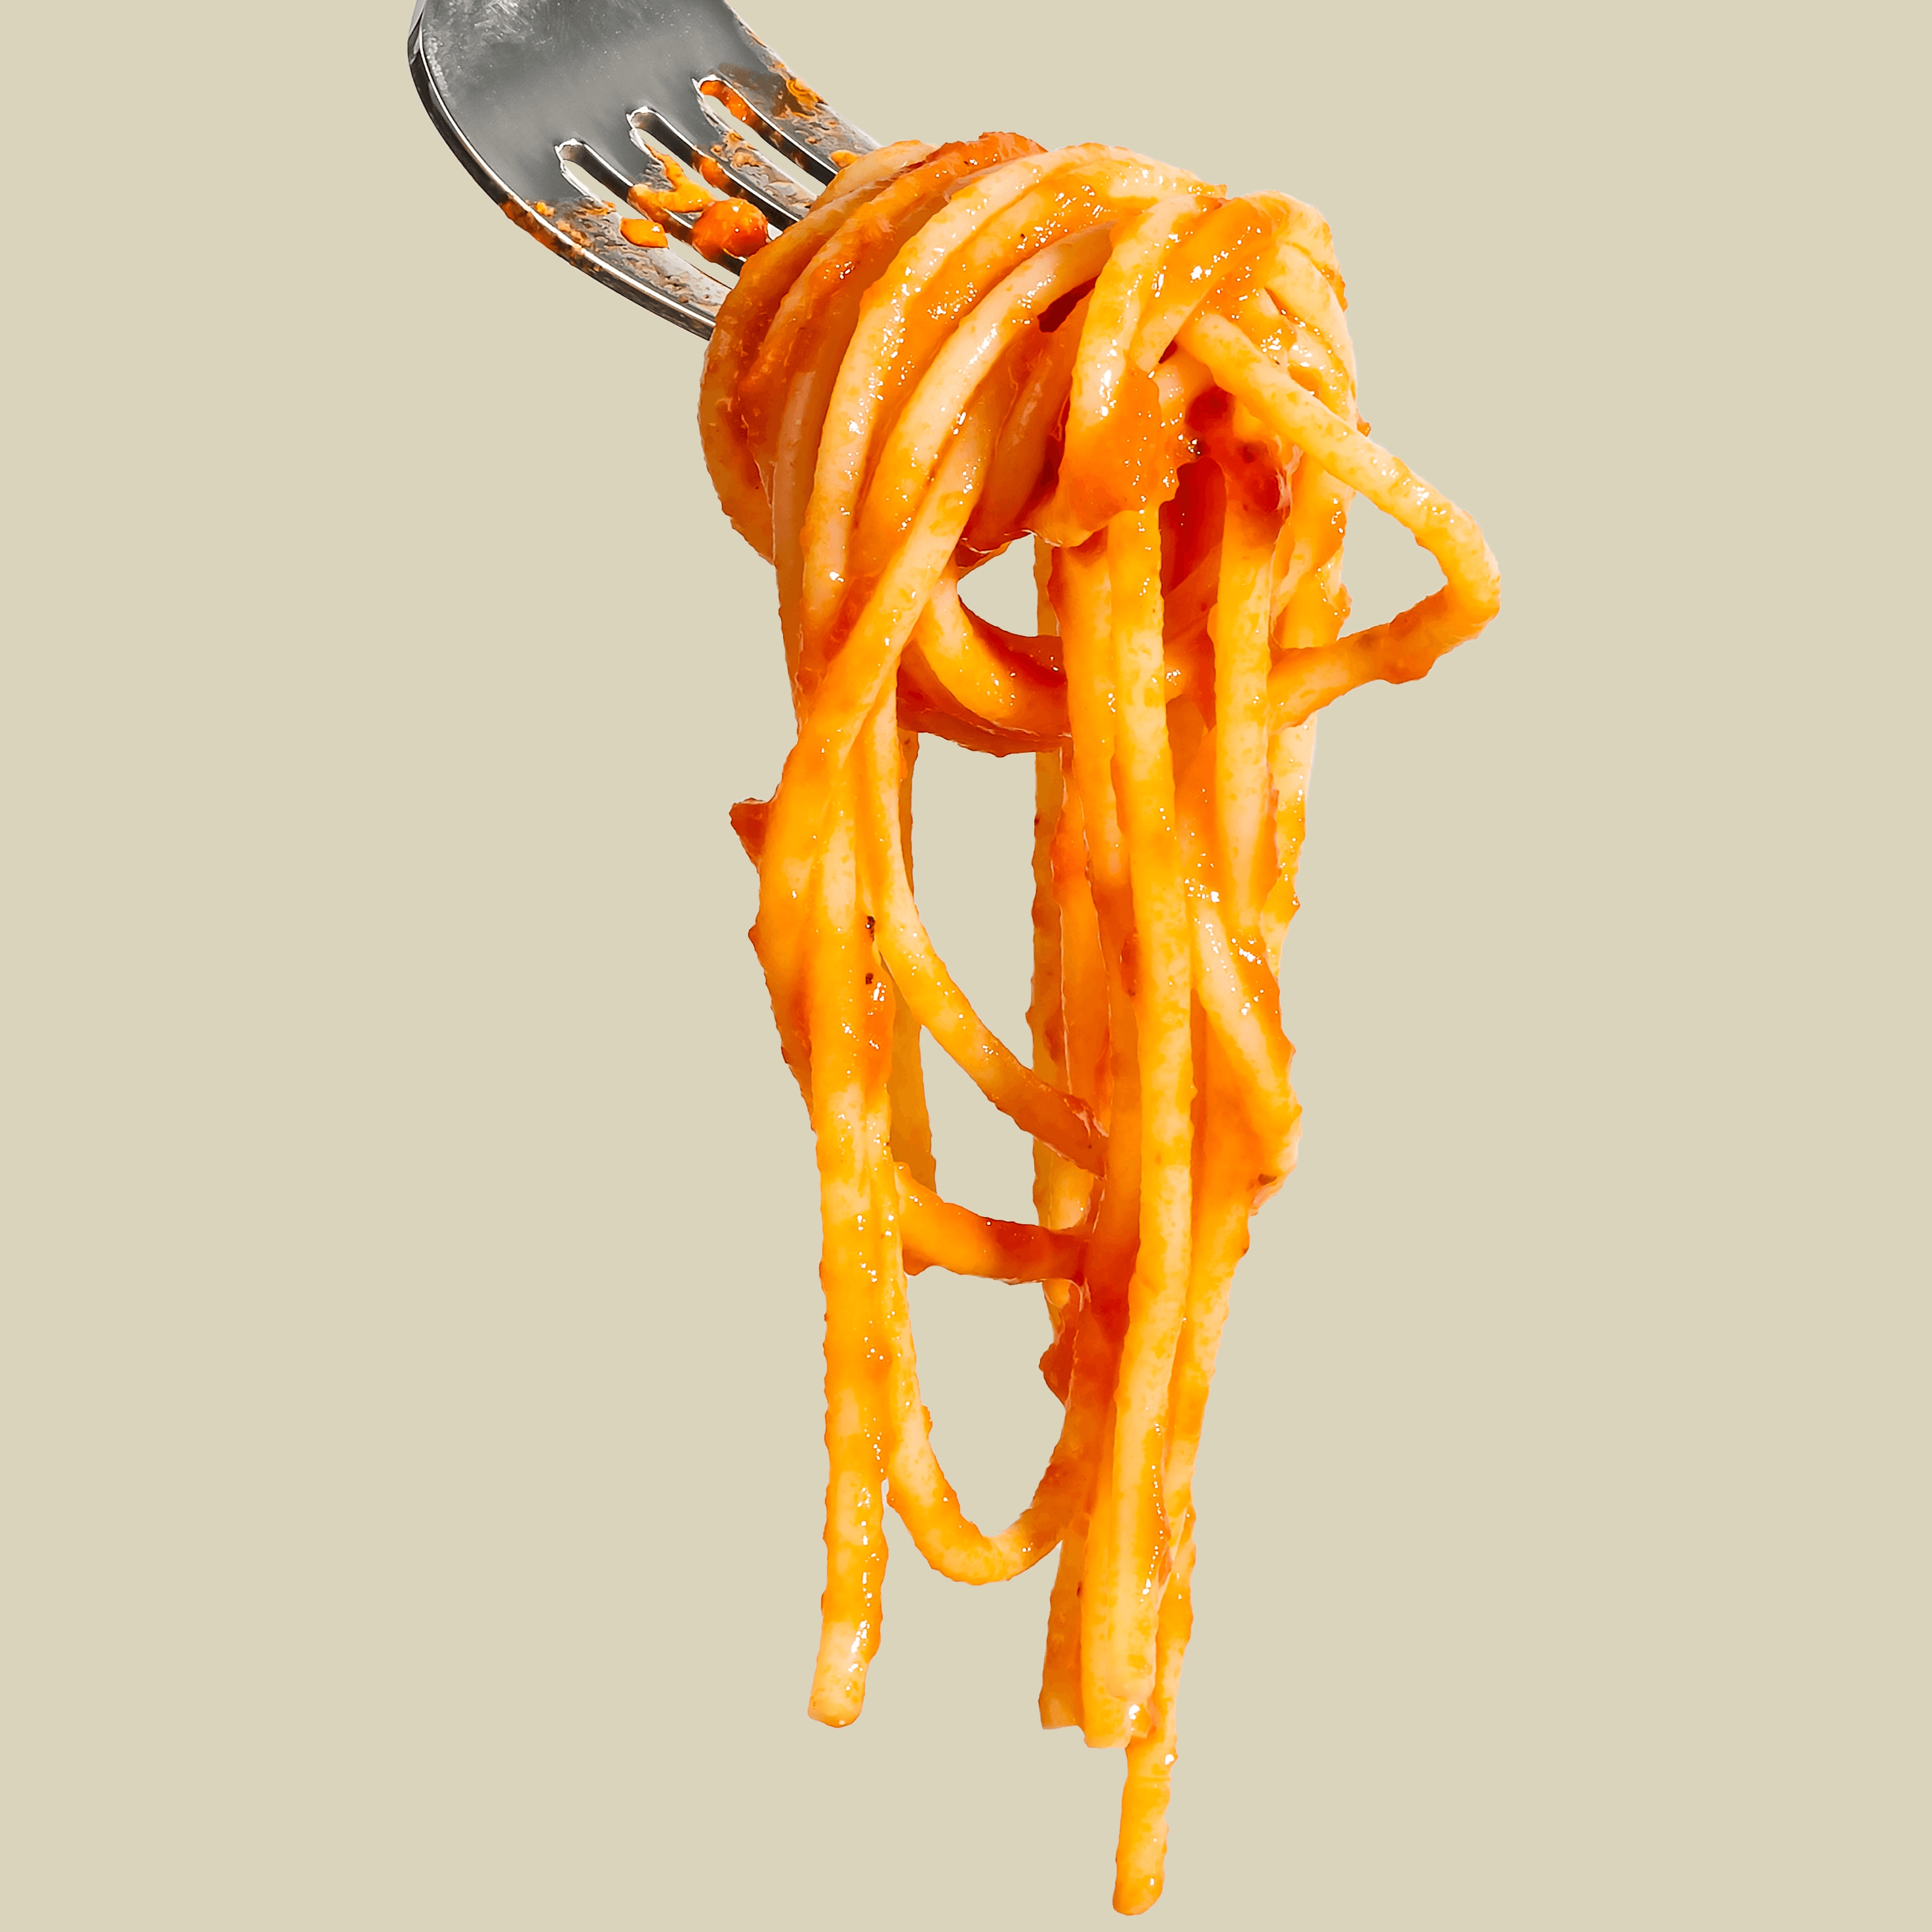 One Minute Spaghetti